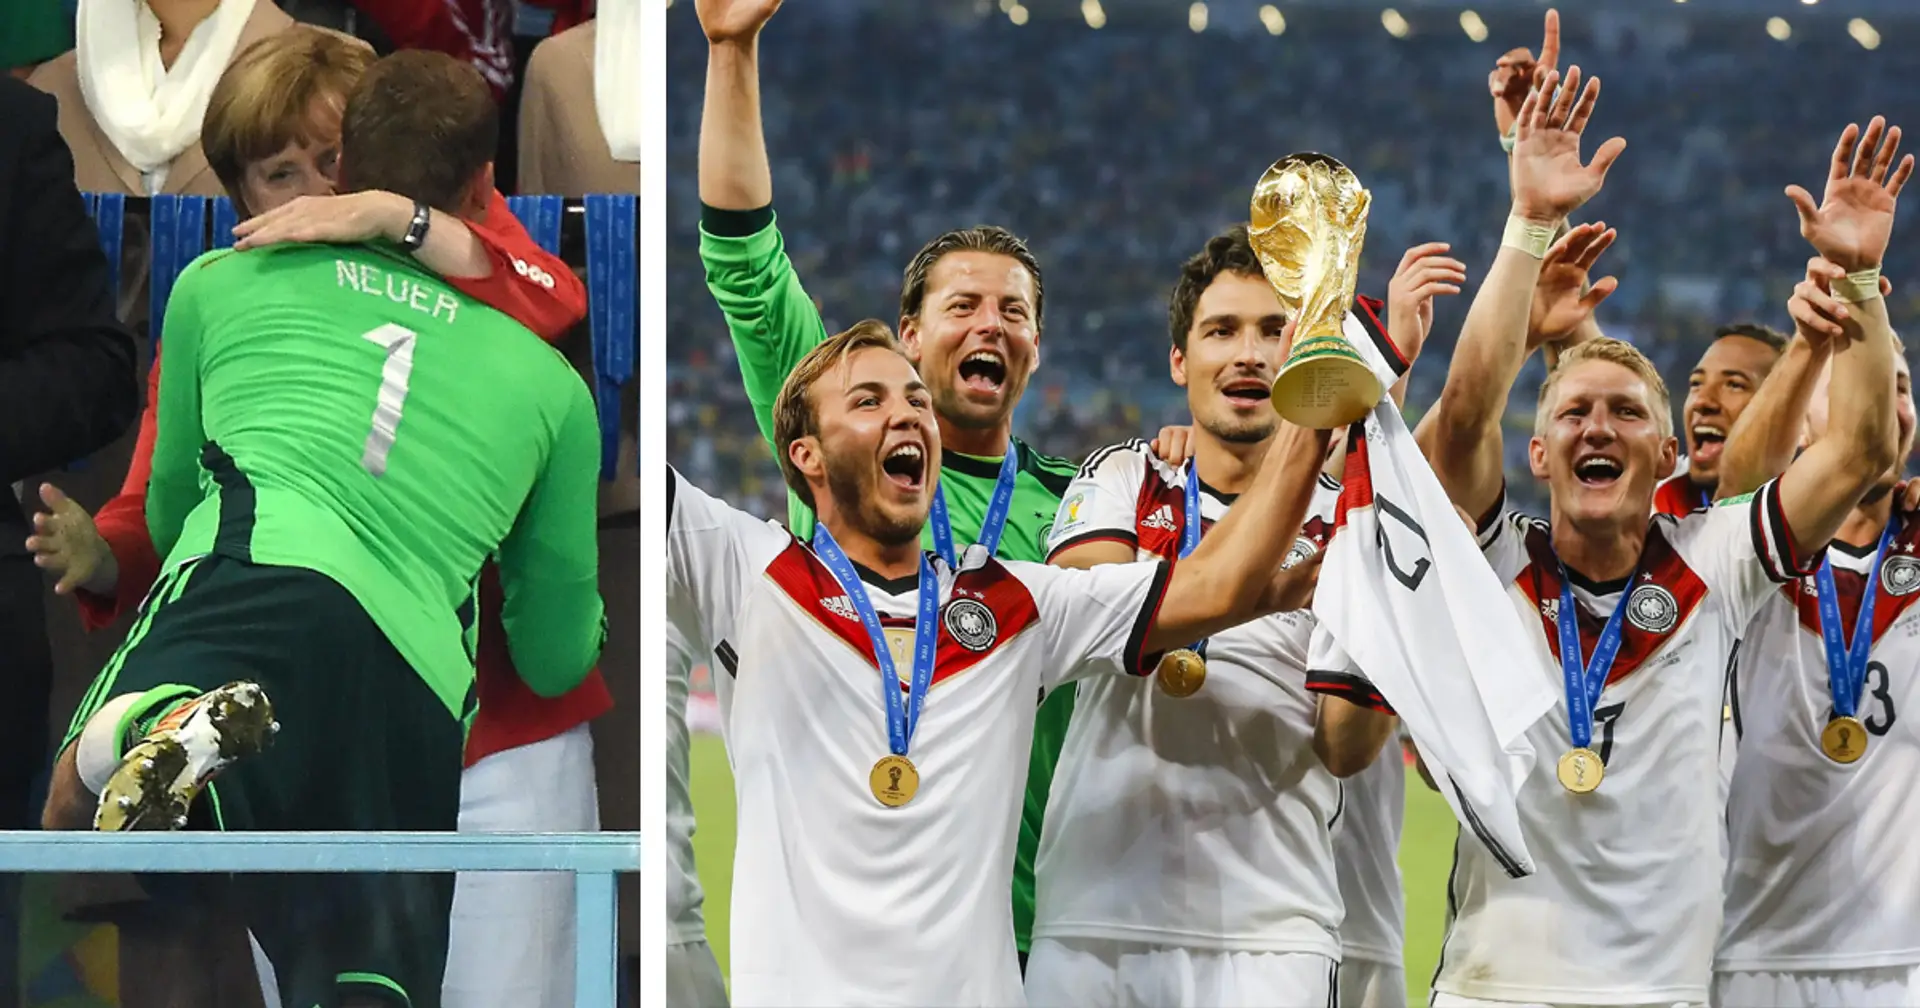 An diesem Tag vor 9 Jahren: Sieben Bayern-Spieler triumphieren bei der WM 2014 - wo sind sie heute?